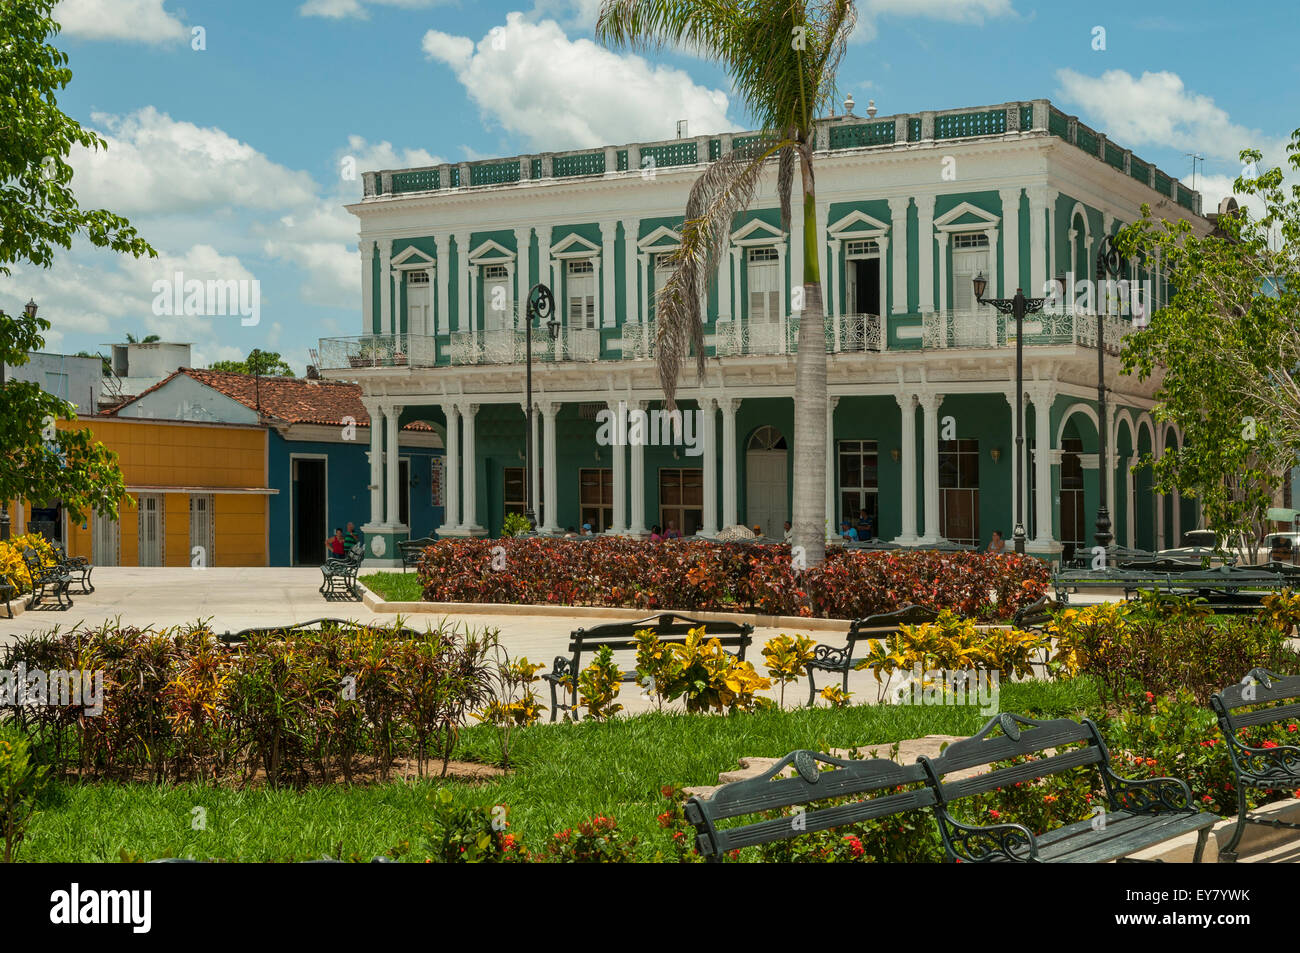 Parque Serafin Sanchez, Sancti Spiritus, Cuba Stock Photo